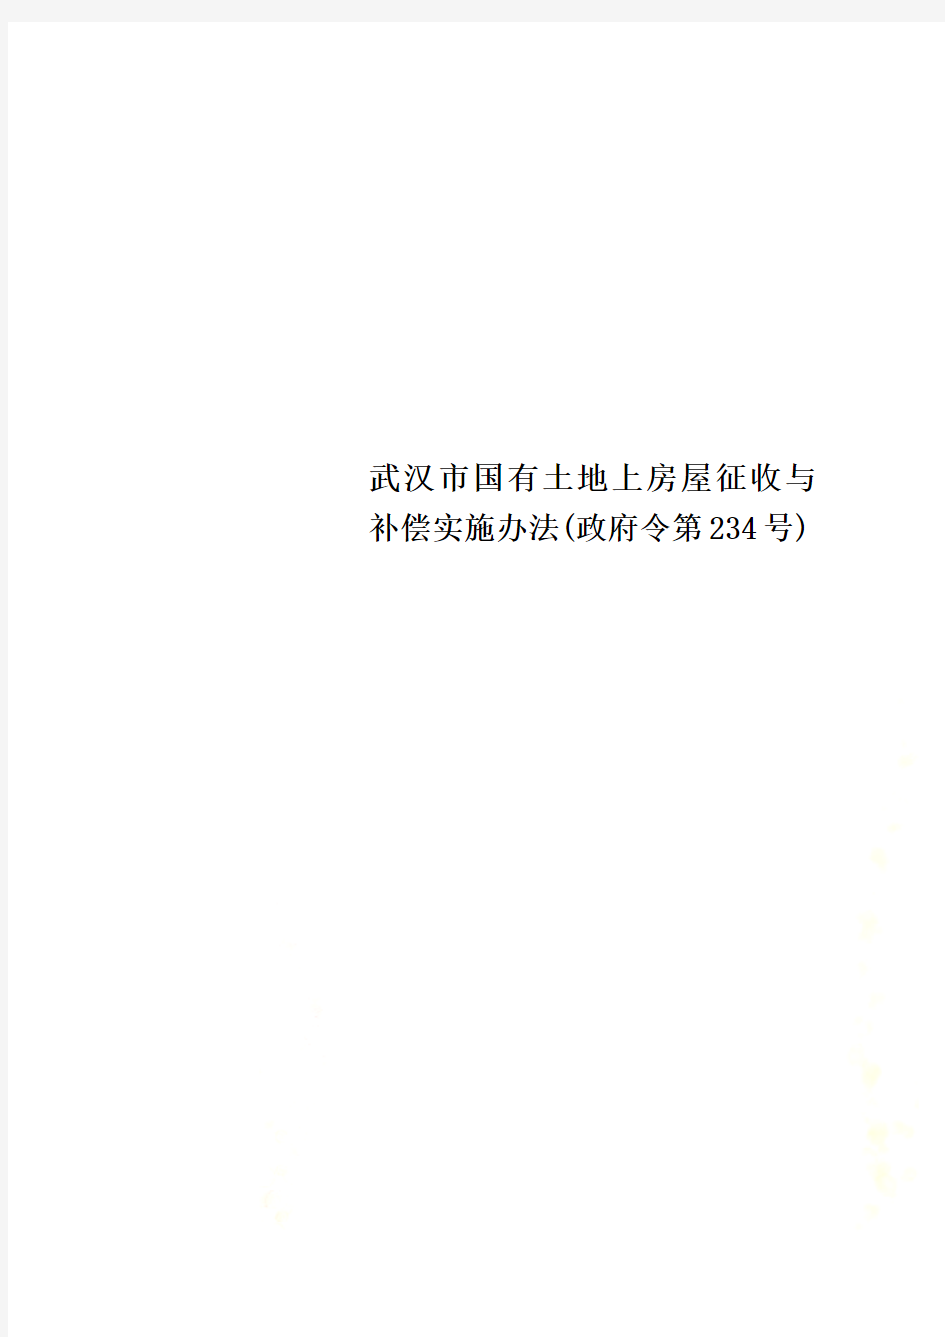 武汉市国有土地上房屋征收与补偿实施办法(政府令第234号)